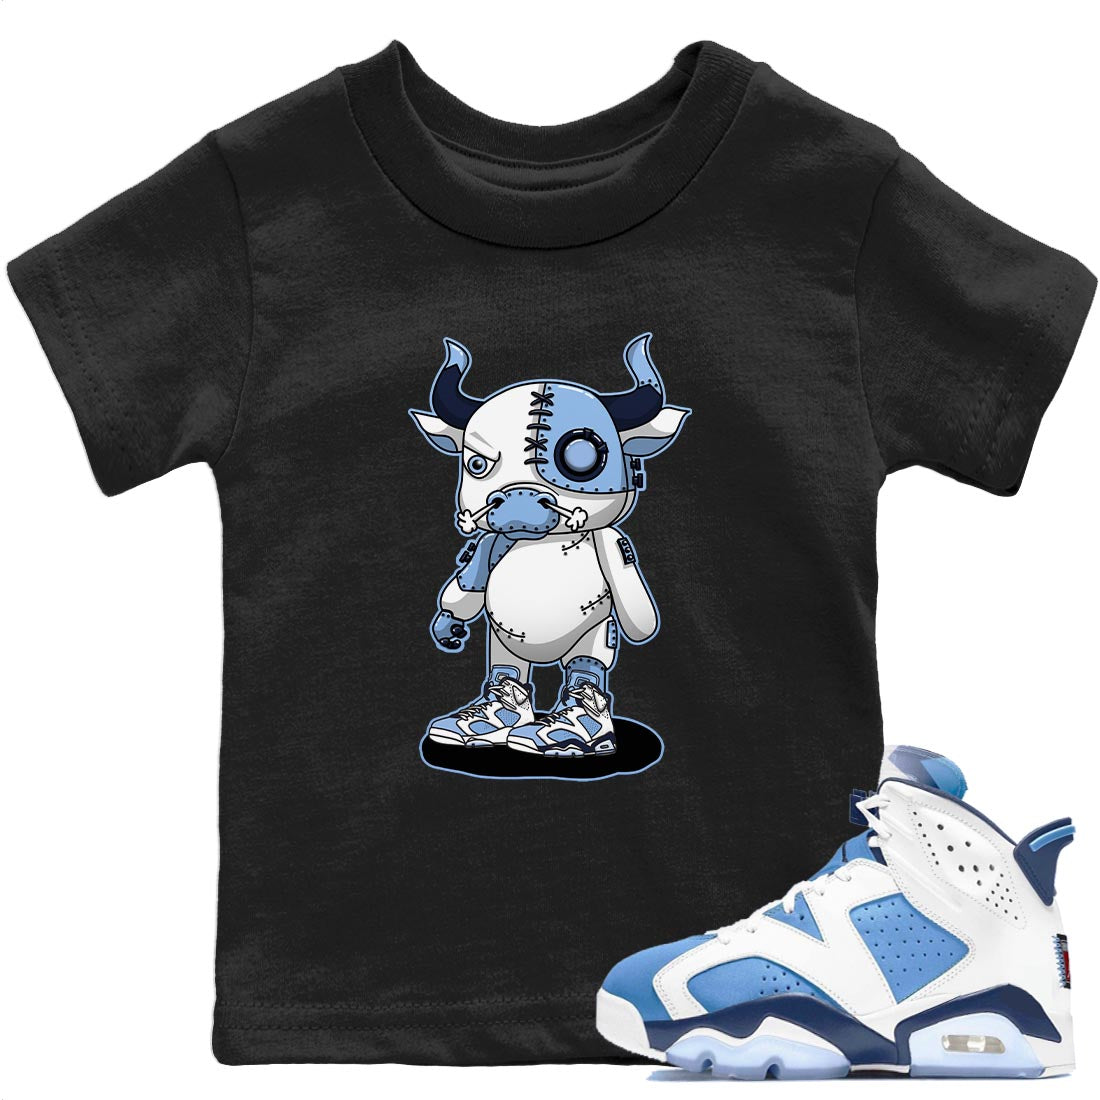 Jordan 6 UNC Sneaker Match Tees Cyborg Bull Sneaker Tees Jordan 6 UNC Sneaker Release Tees Kids Shirts